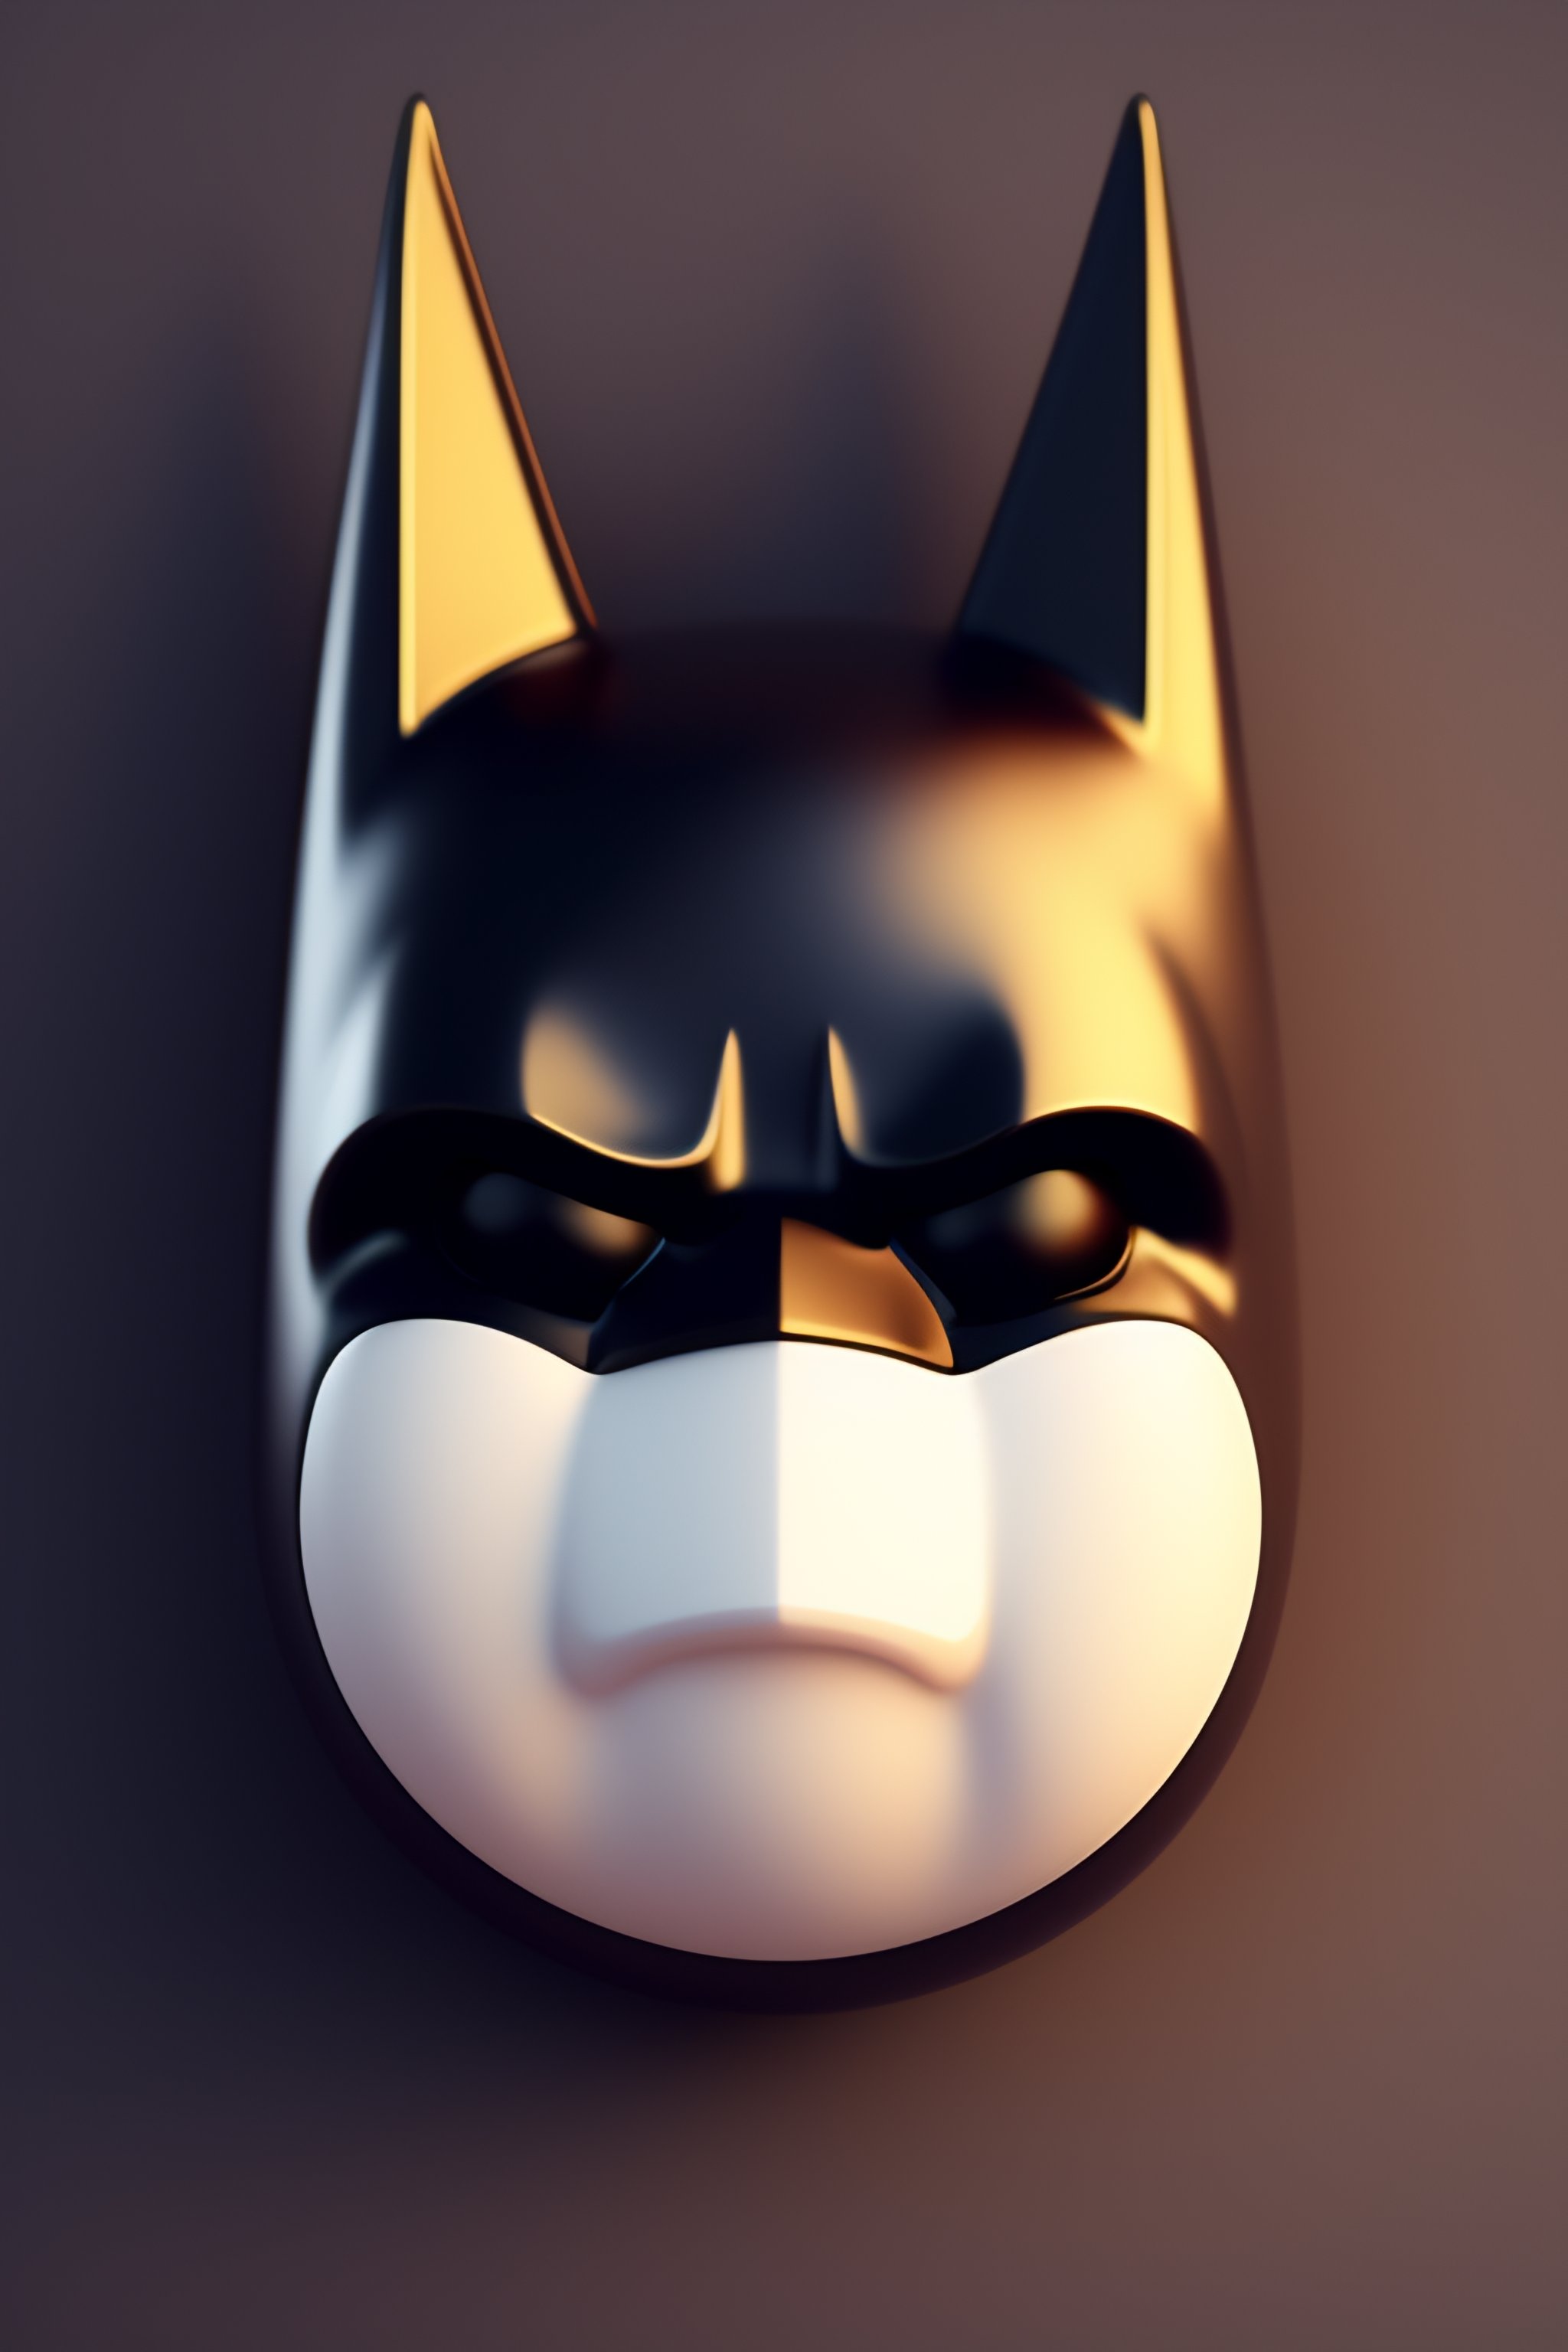 batman face cartoon